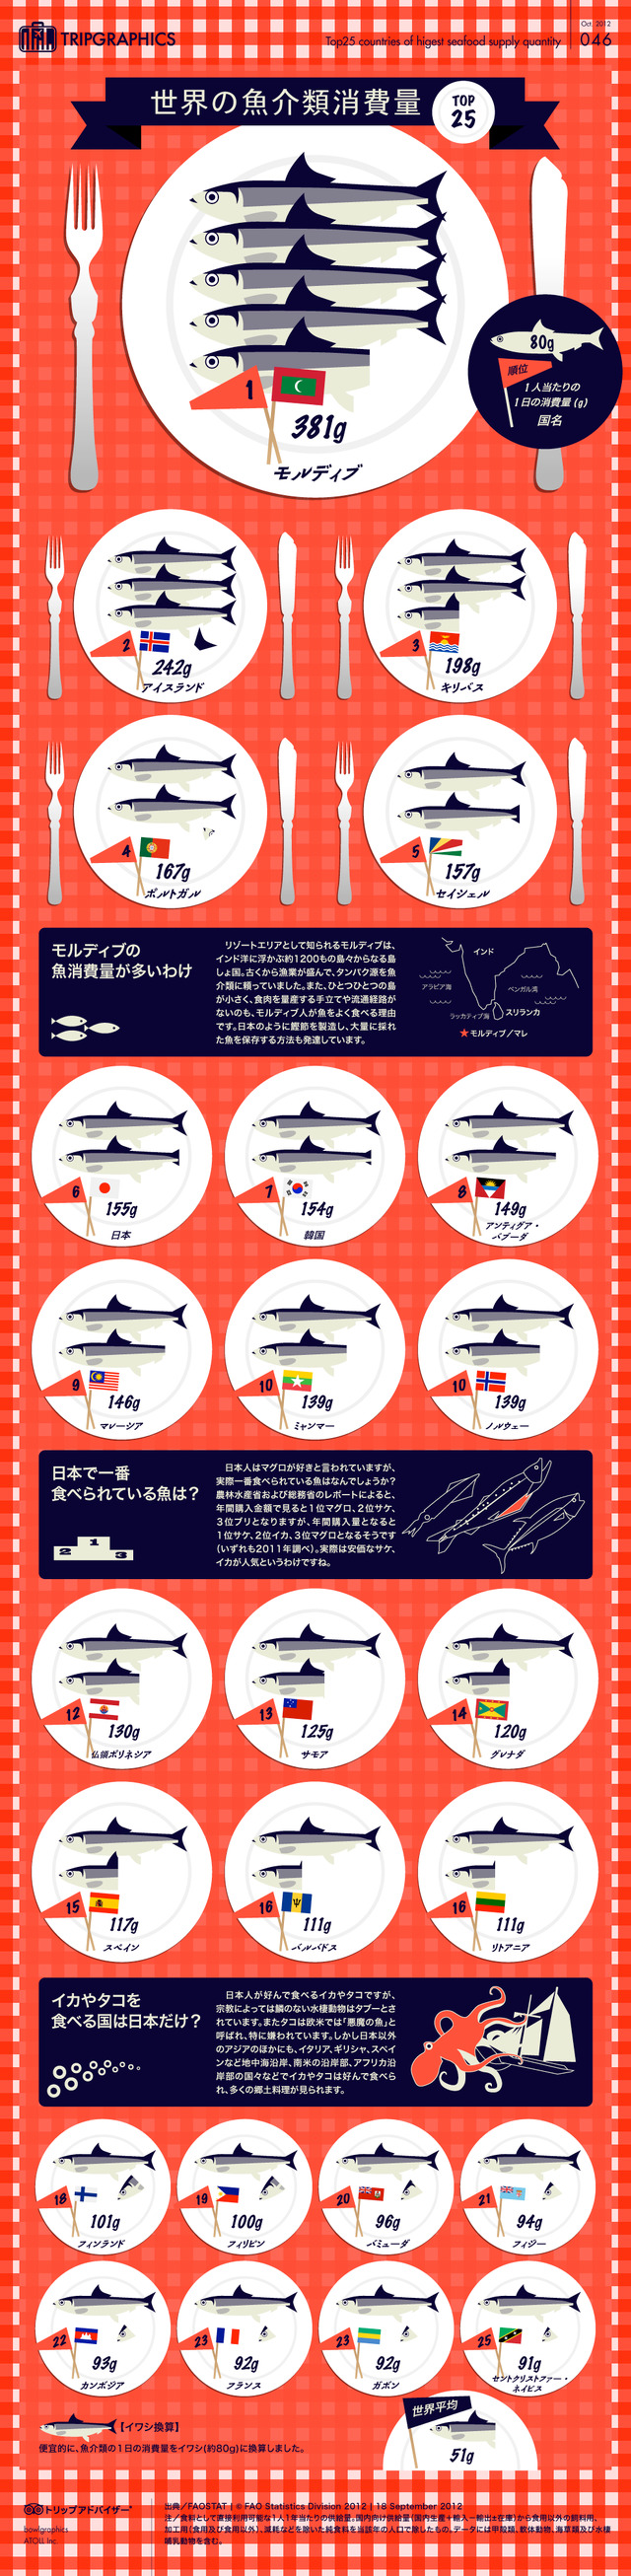 「世界のお魚消費量 TOP25」インフォグラフィック